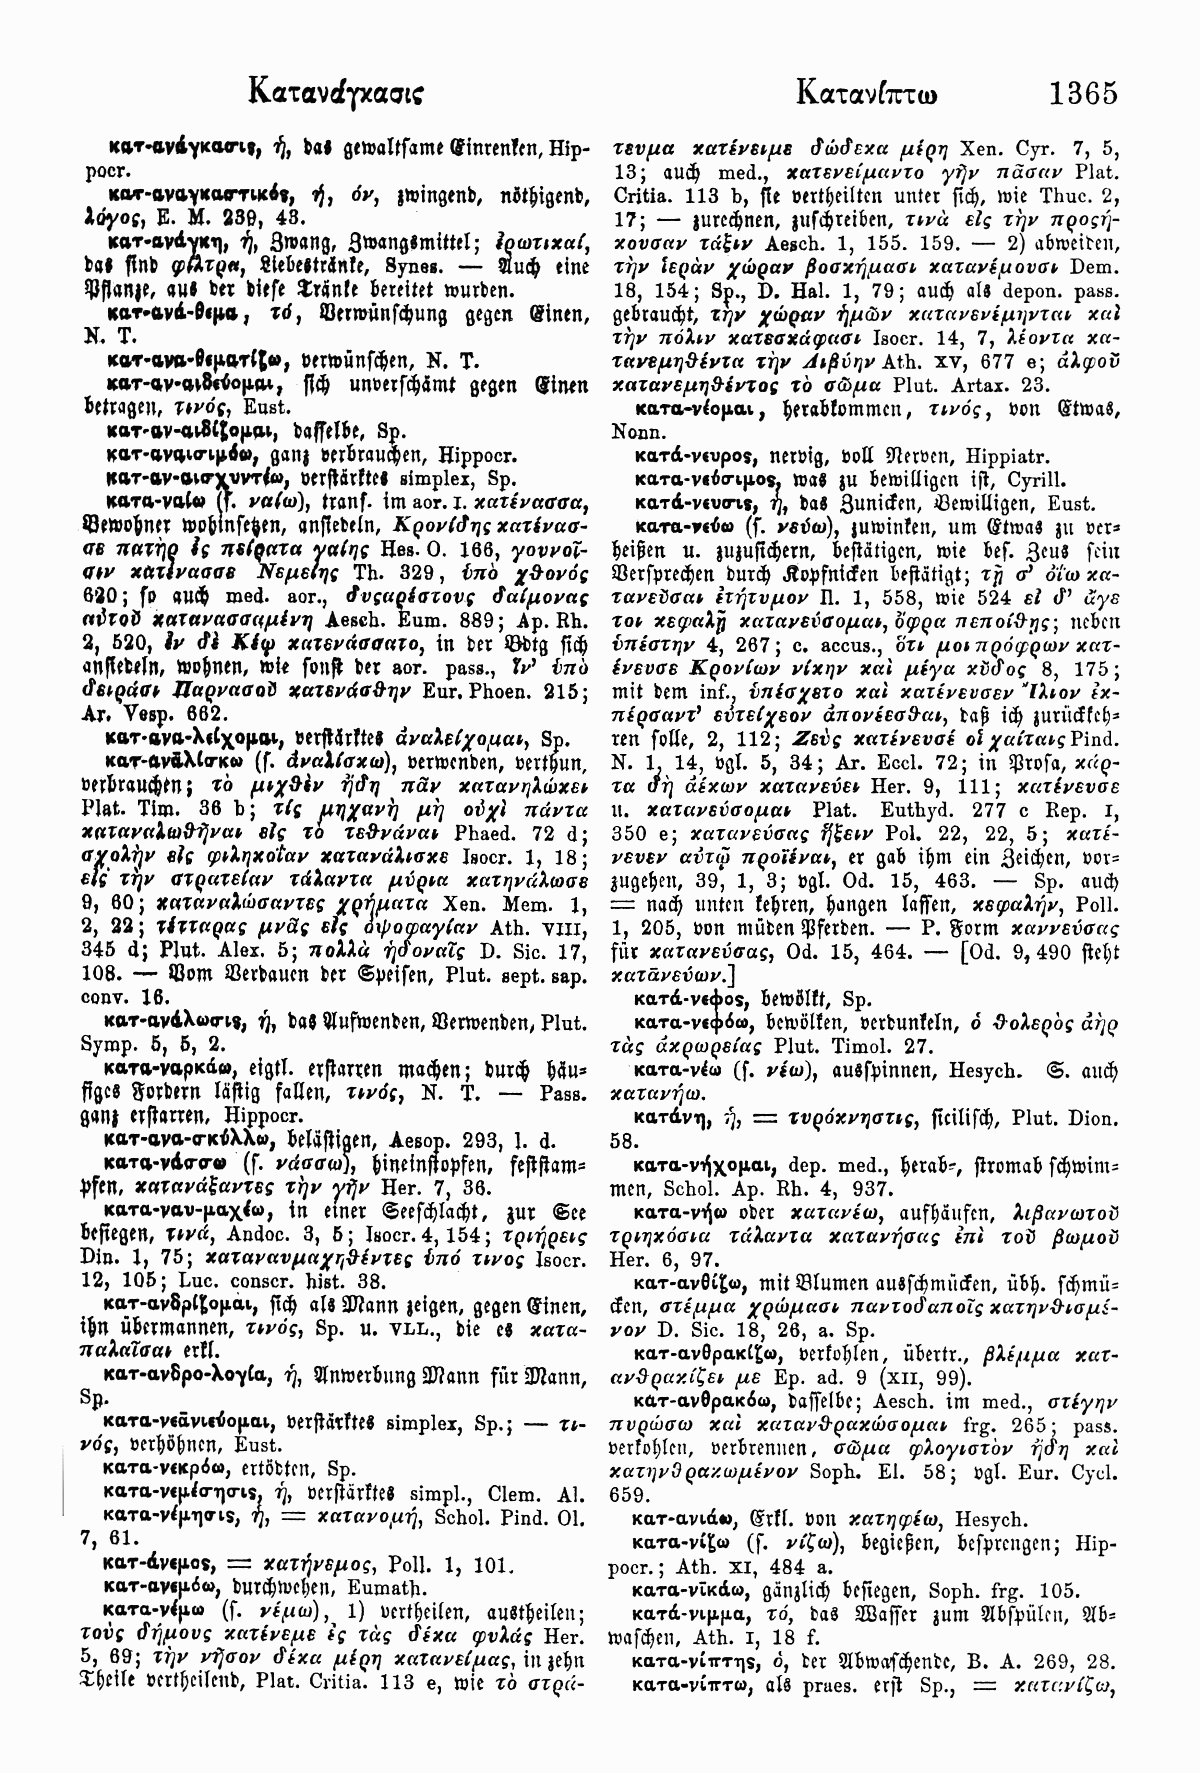 Wilhelm Pape: Handwörterbuch der griechischen Sprache. Braunschweig <sup>3</sup>1914, Band 1 S. 1365